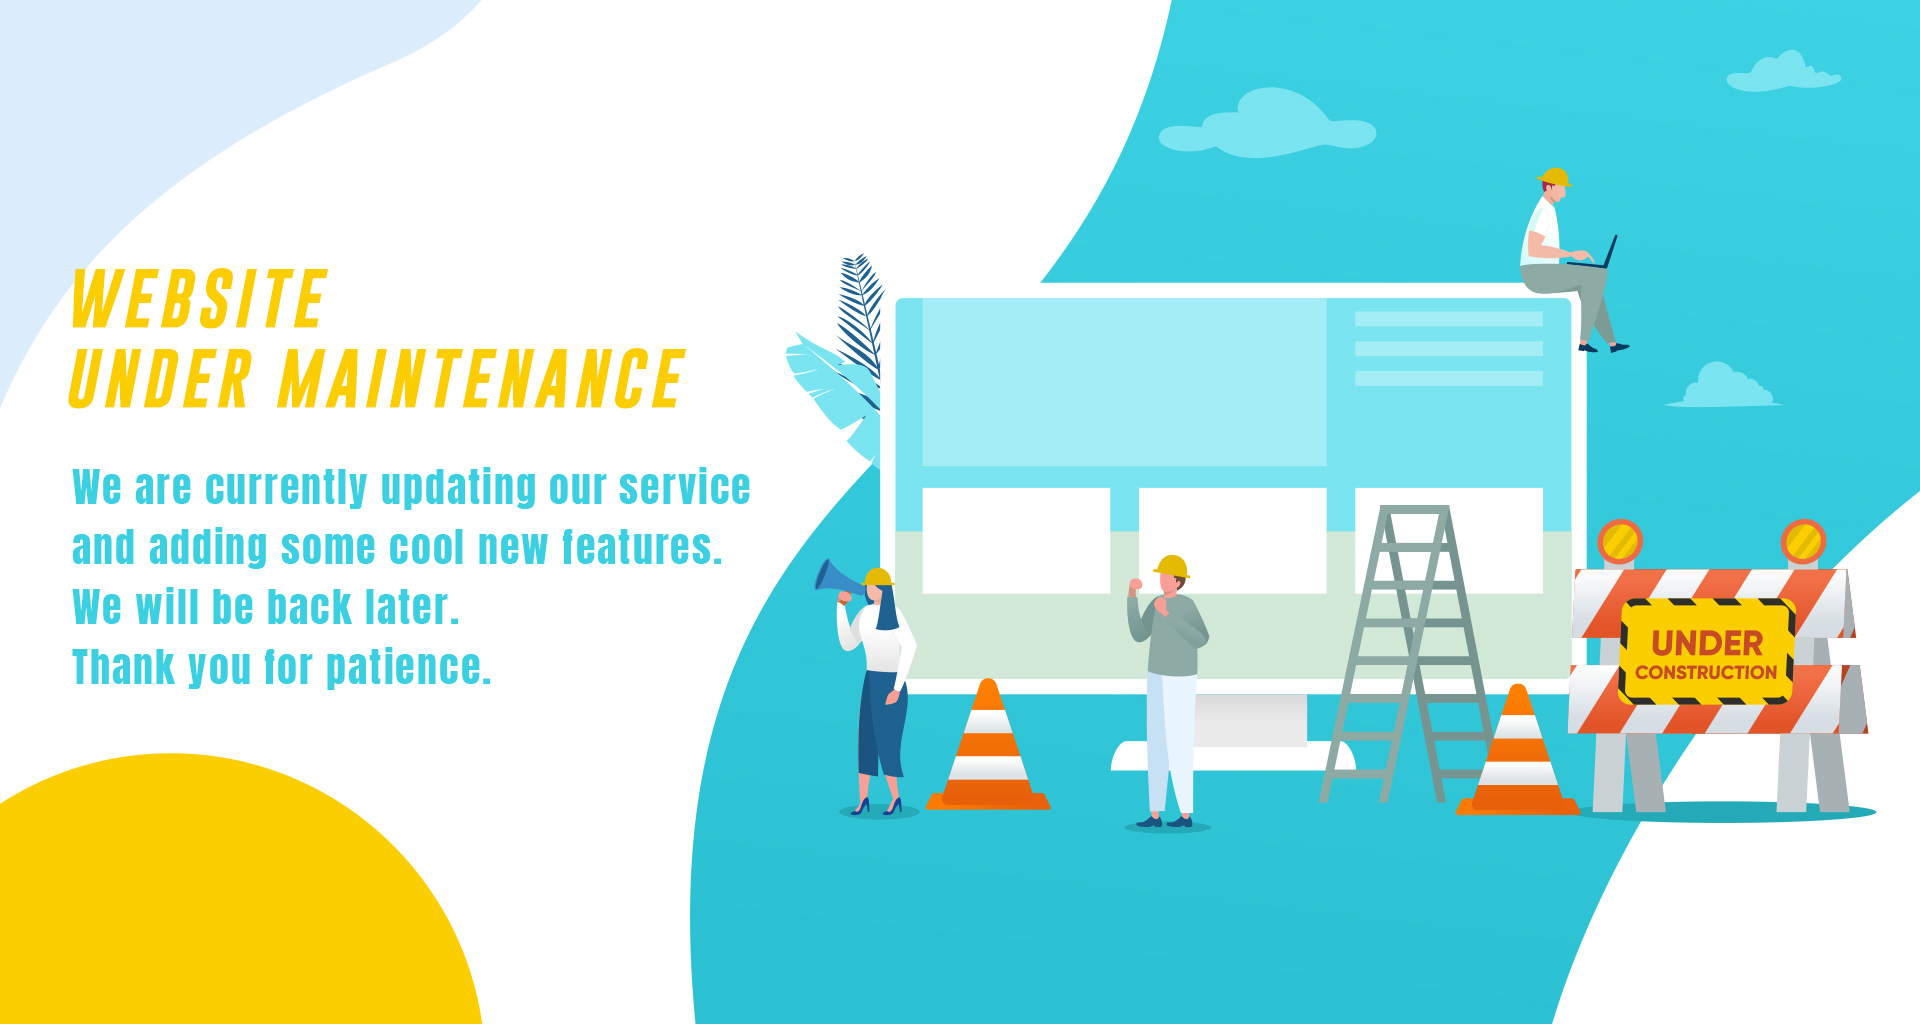 Site is under maintenance